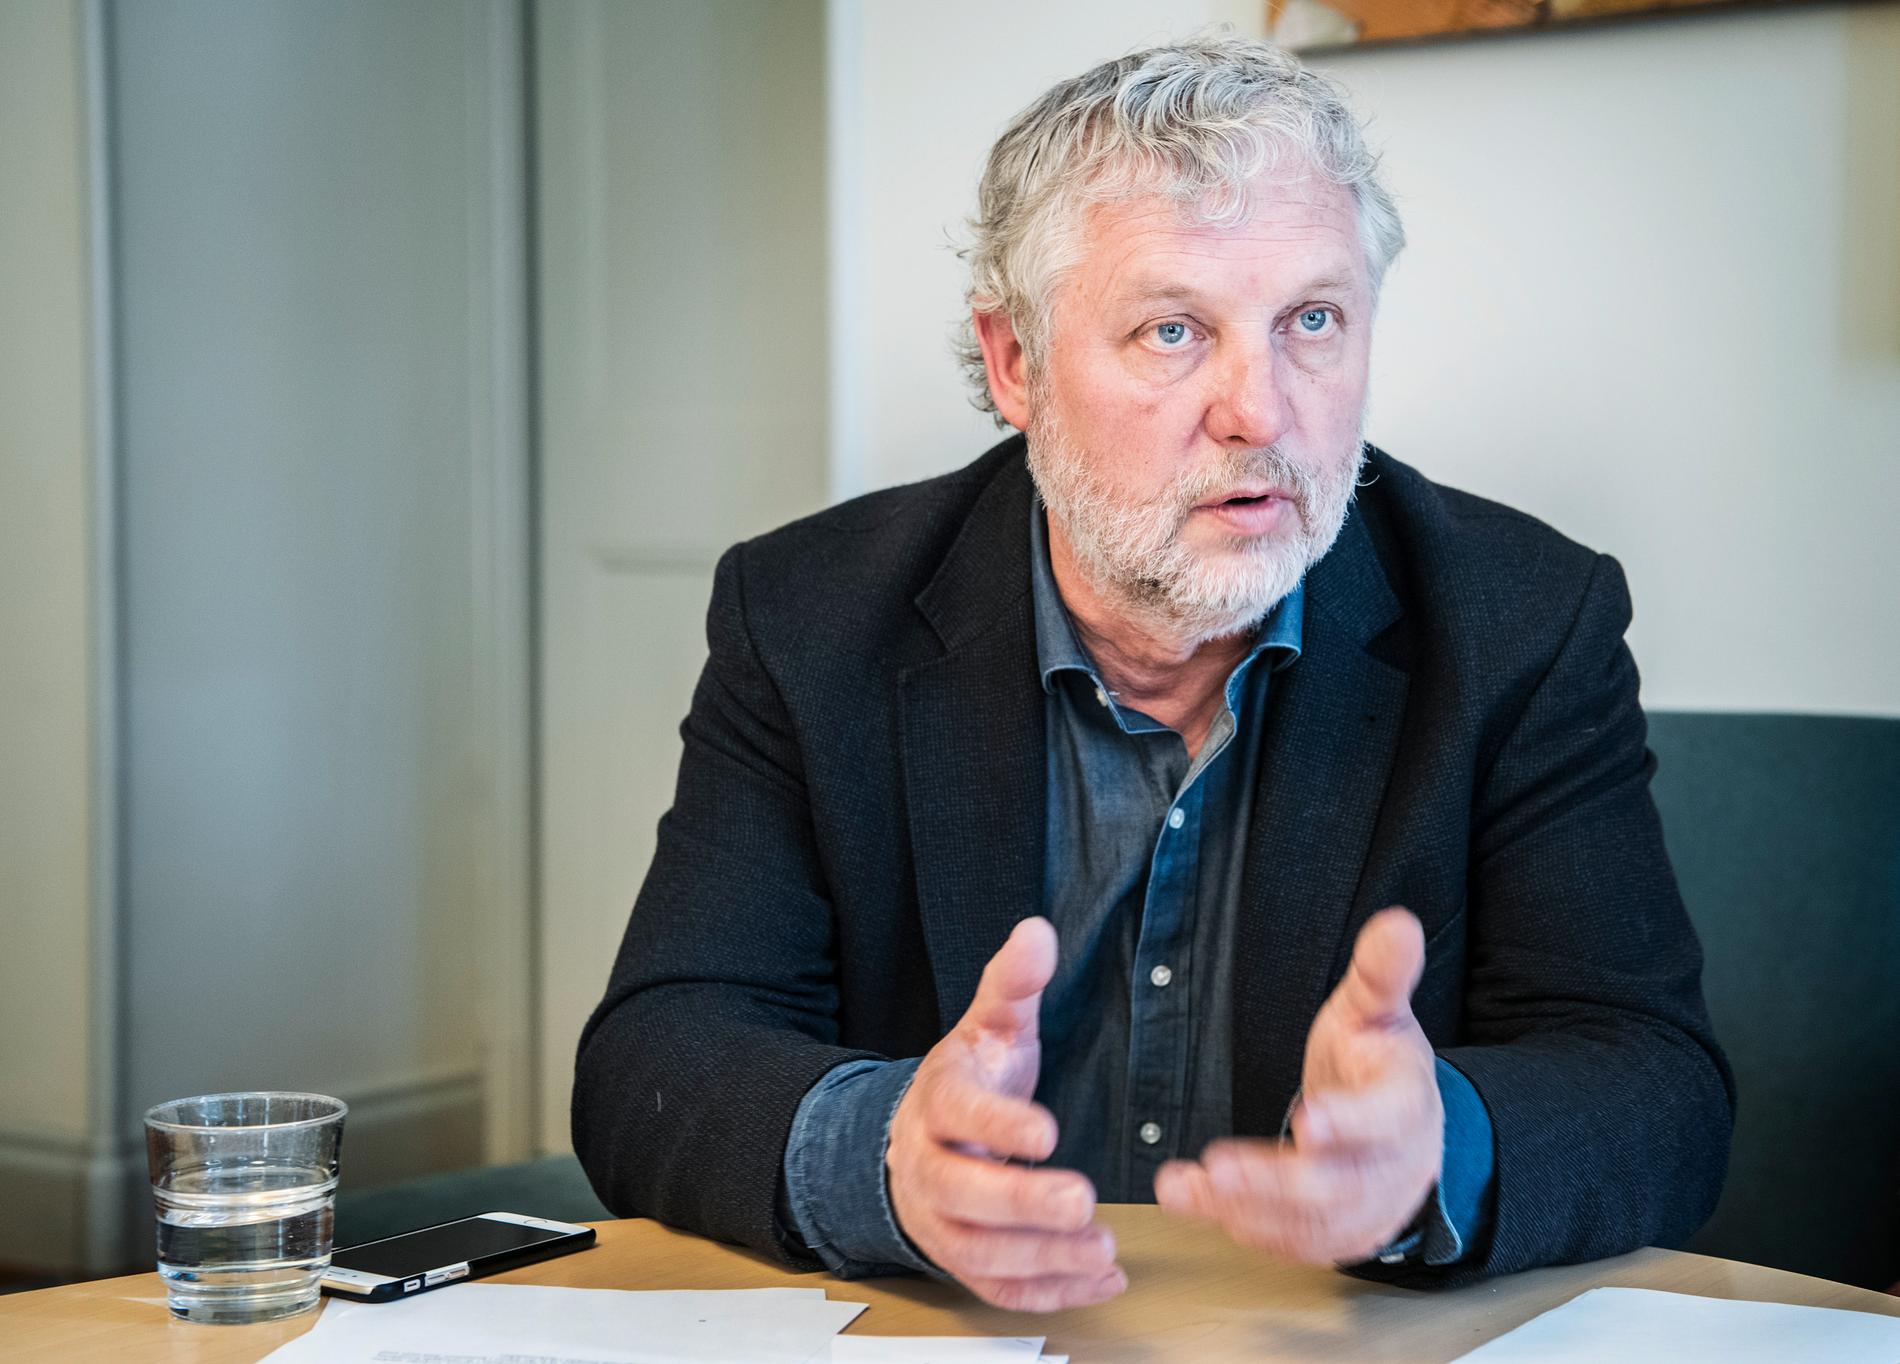 Ministern Peter Eriksson kräver att SD utreder vilka som står bakom botarna.